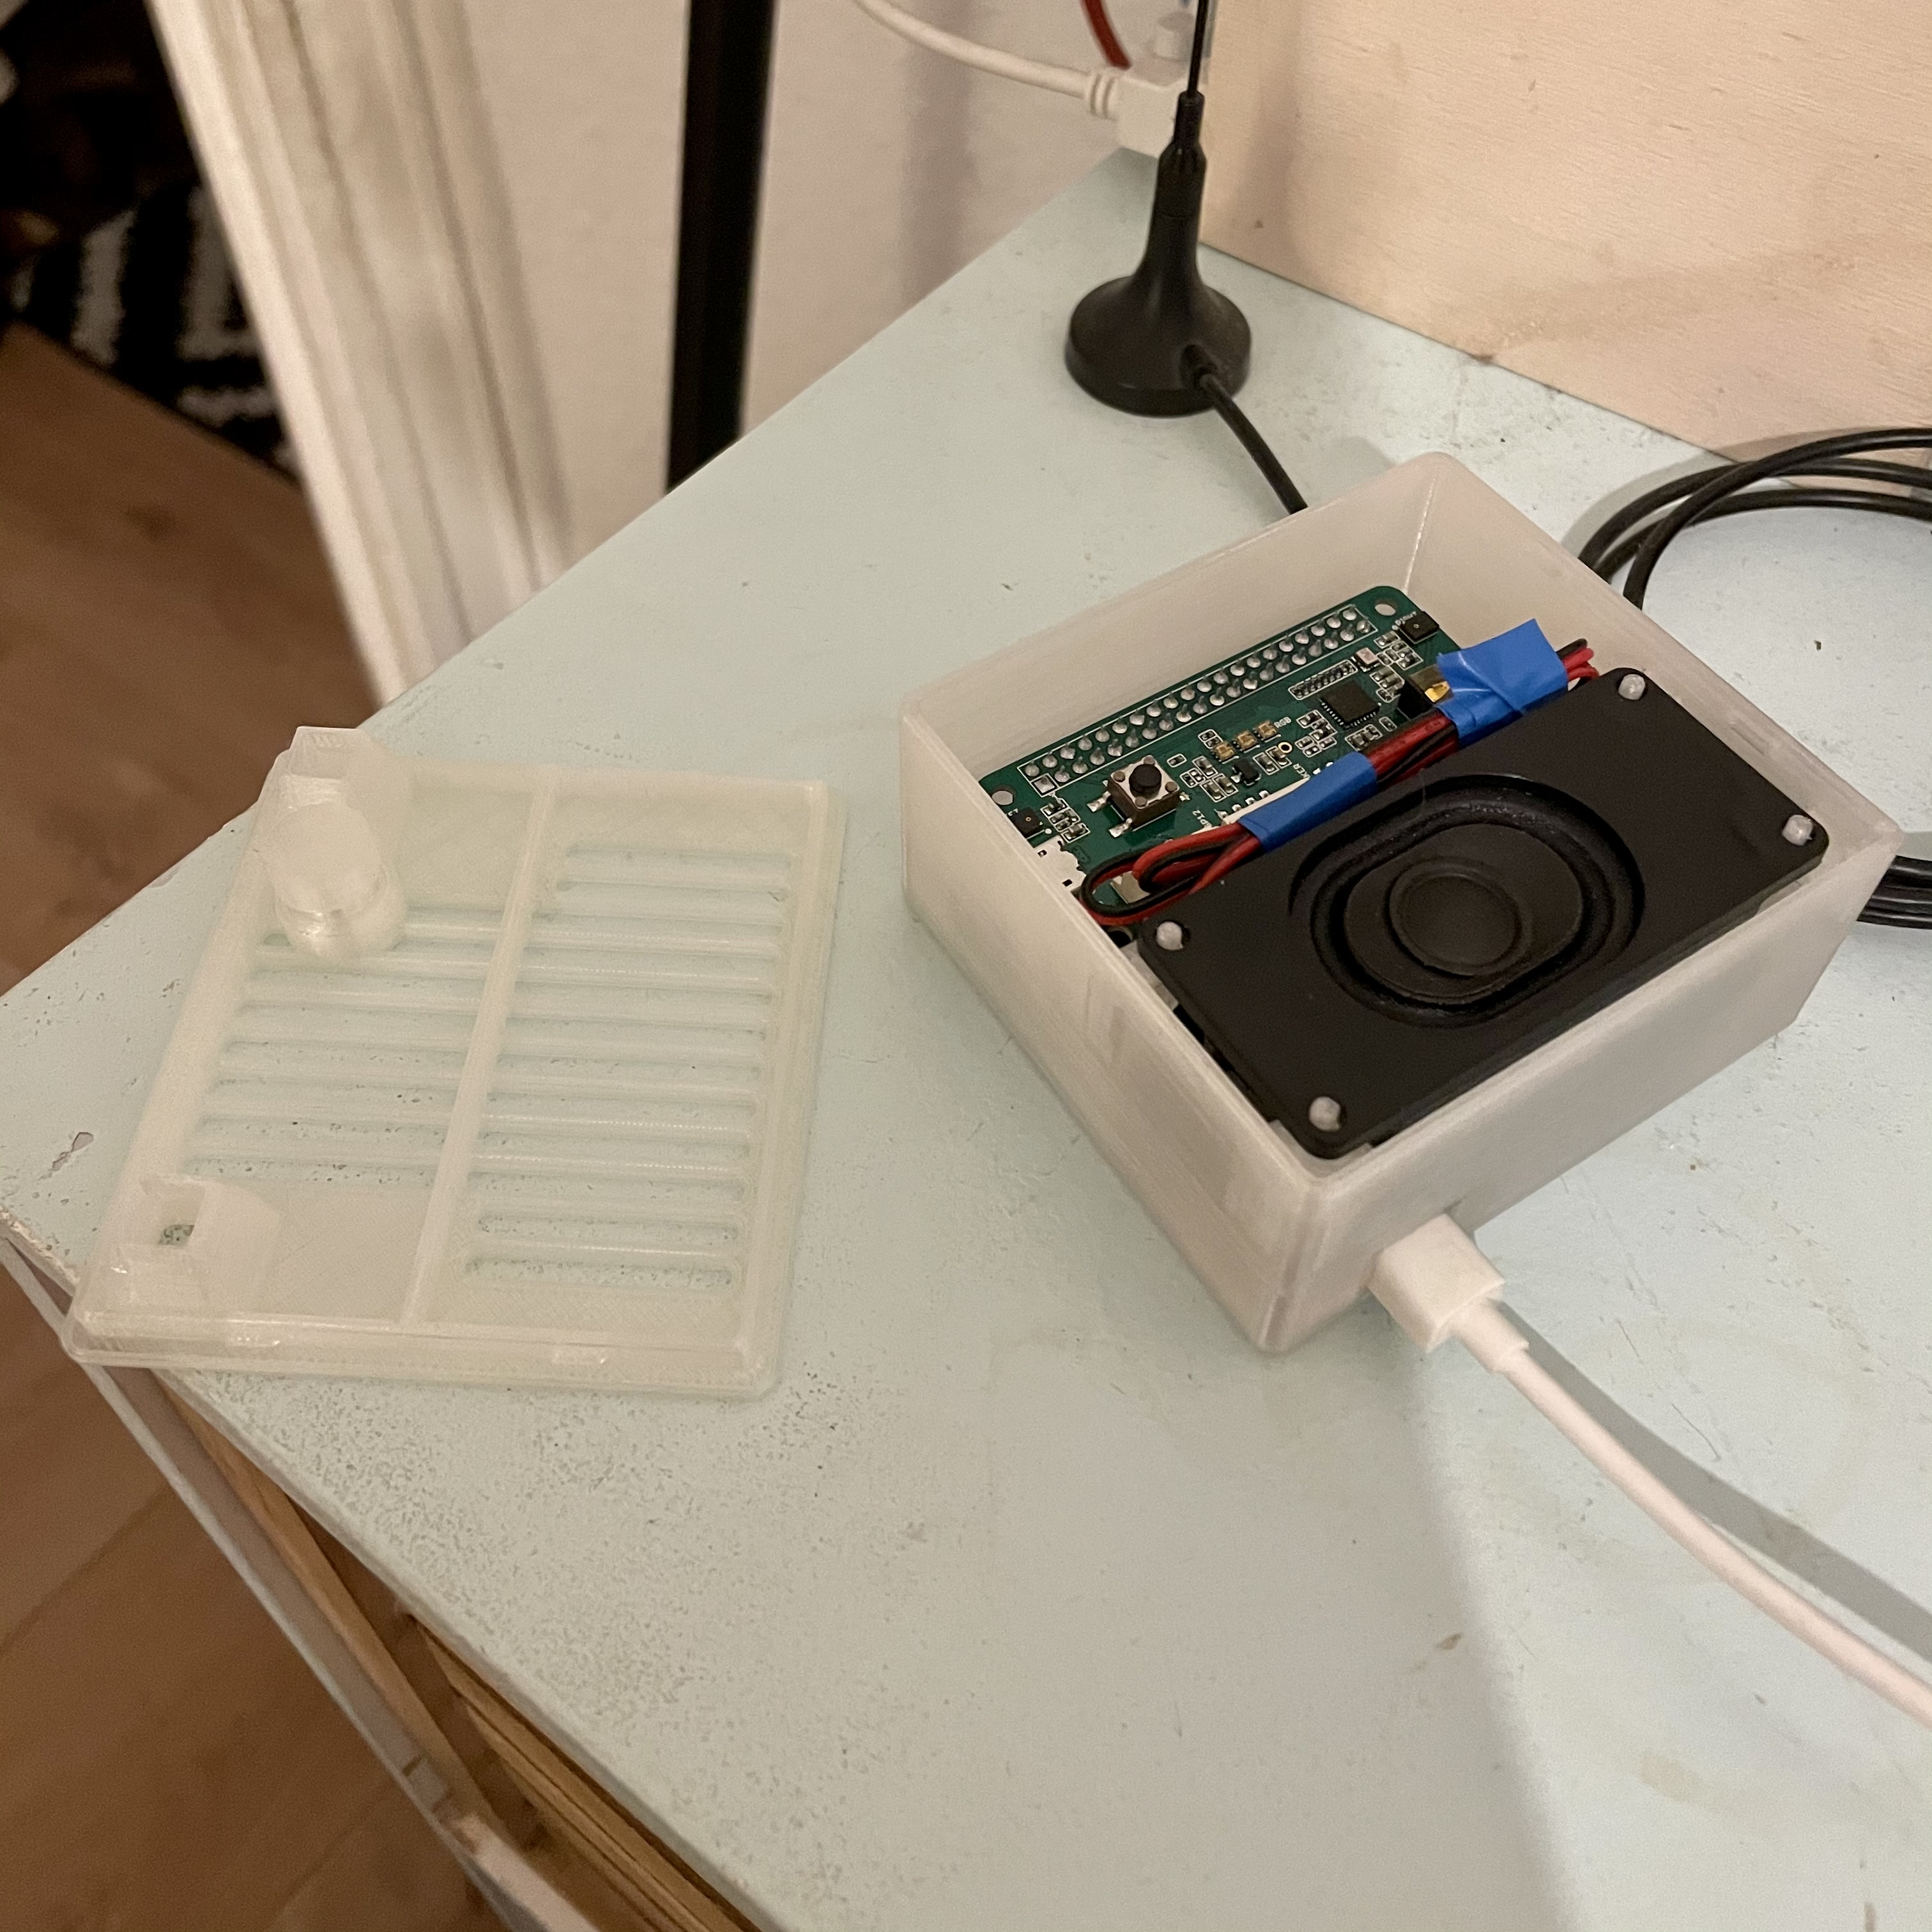 New case for Raspberry Pi 3a+, Respeaker 2mic hat and speaker